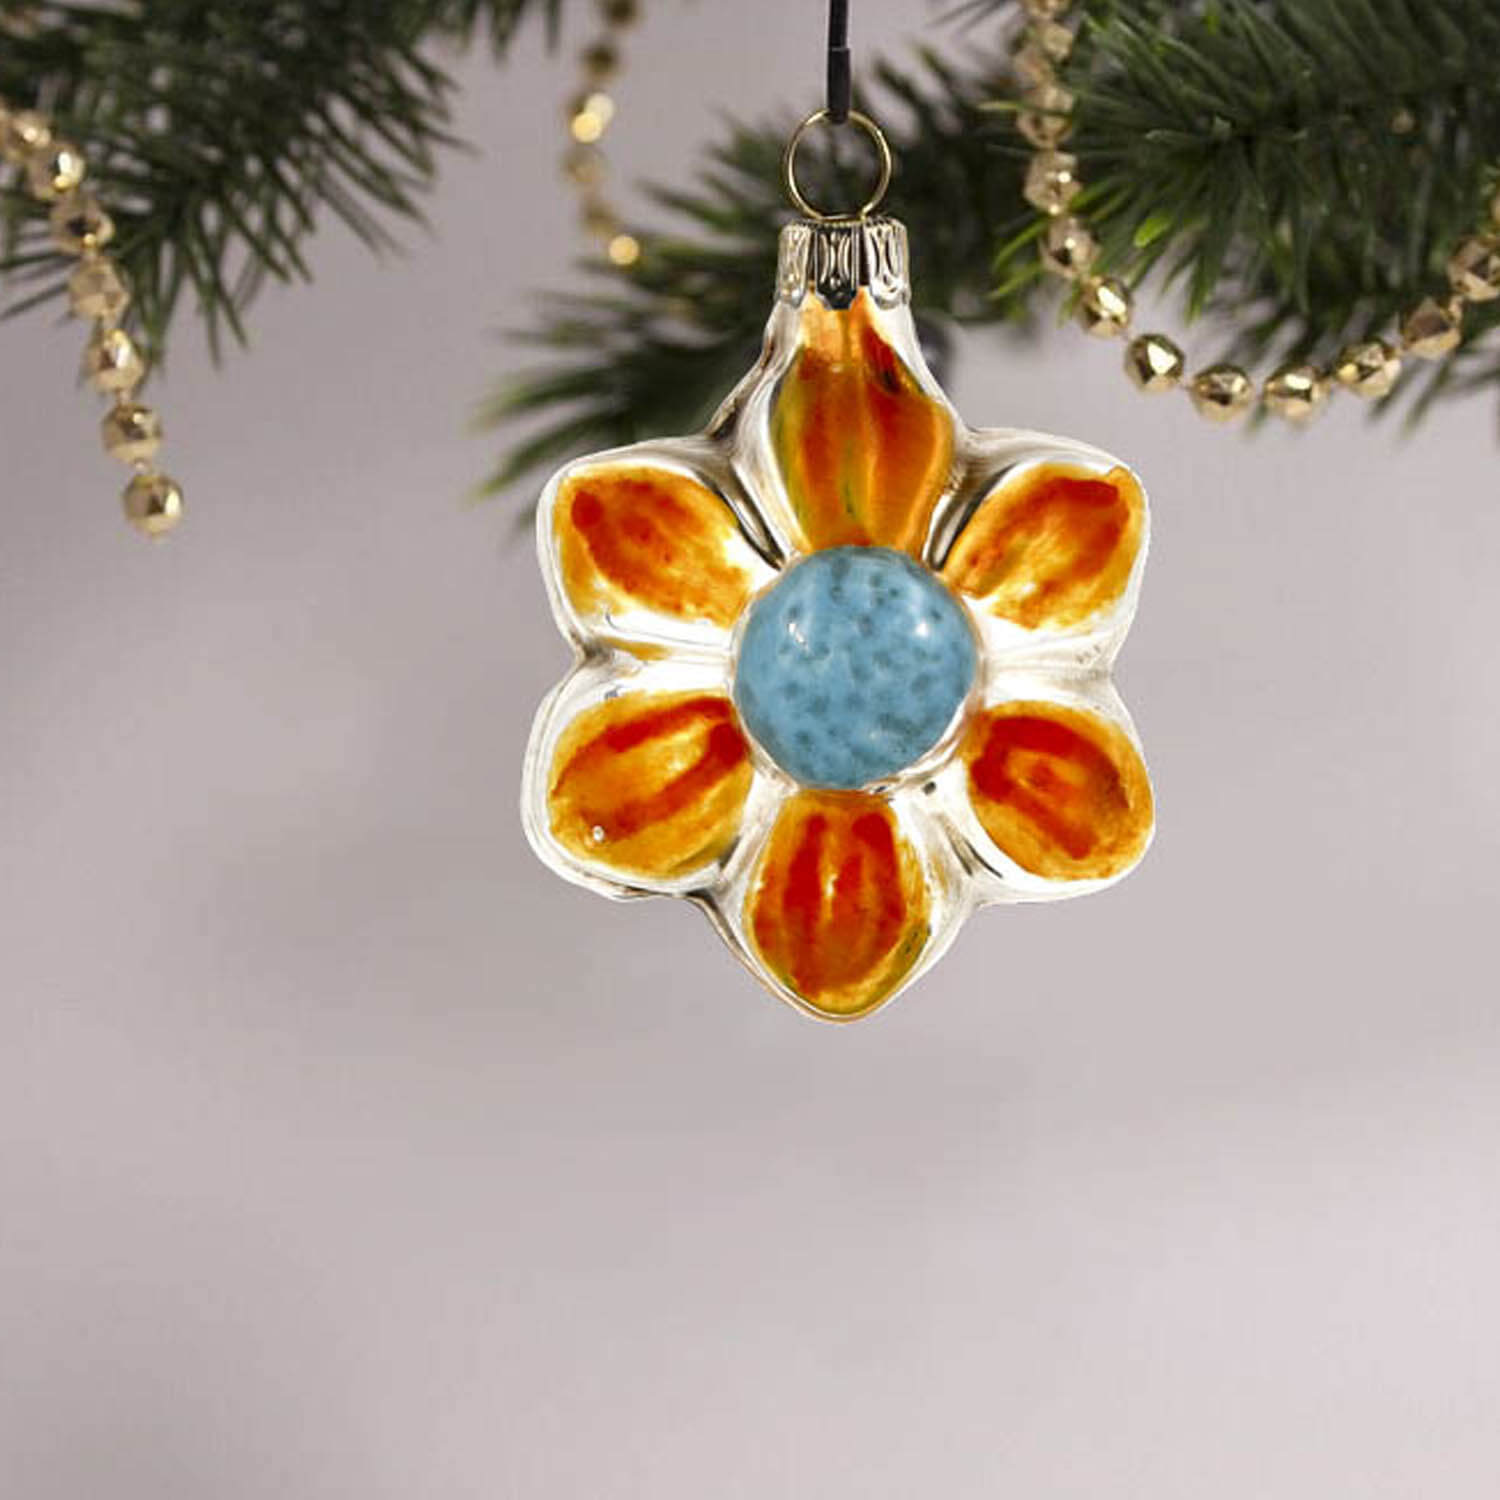 MAROLIN® - Miniature glass ornament "Bloom orange"